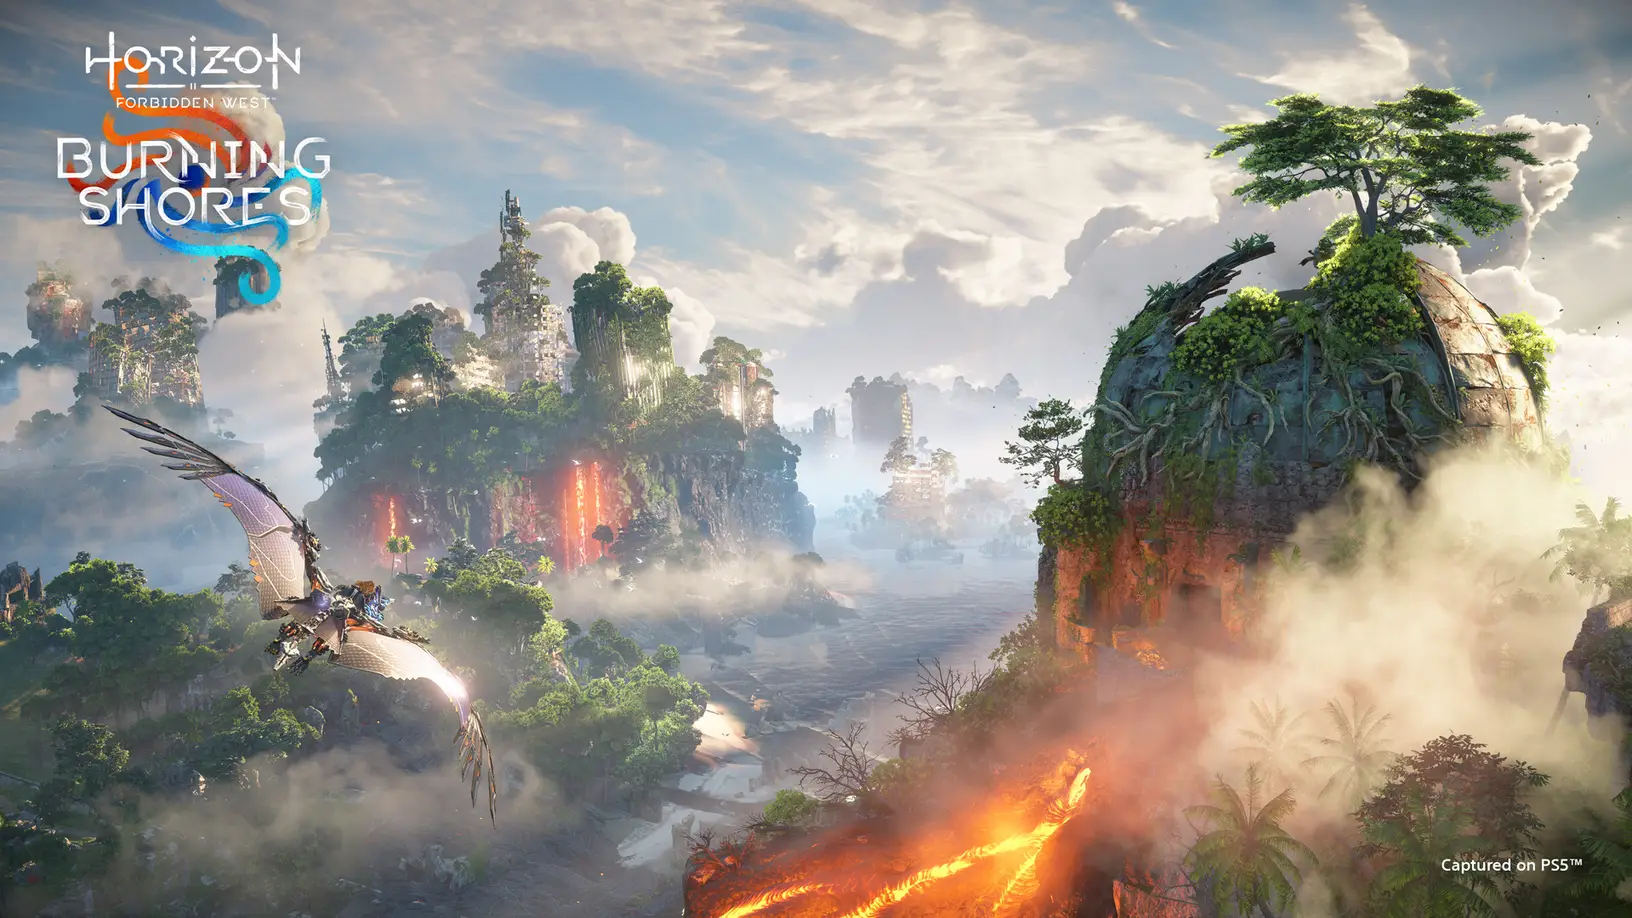 Horizon Forbidden West Announces Burning Shores DLC